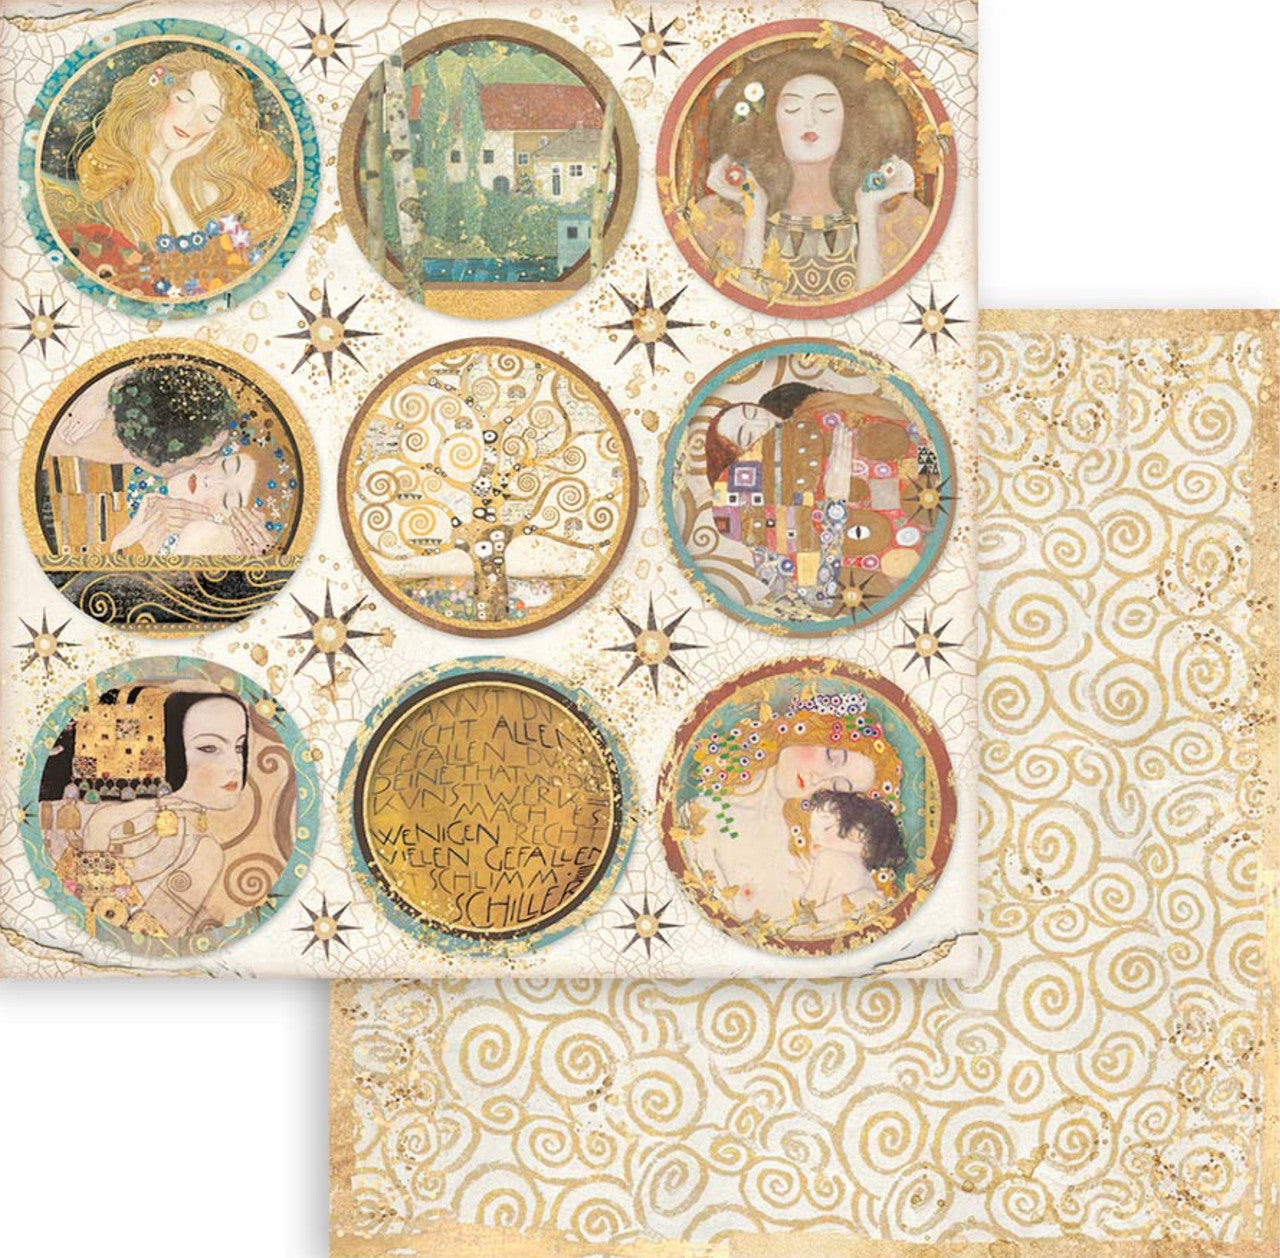 Paquete de papel de doble cara Stamperia (12"x12") - Klimt 